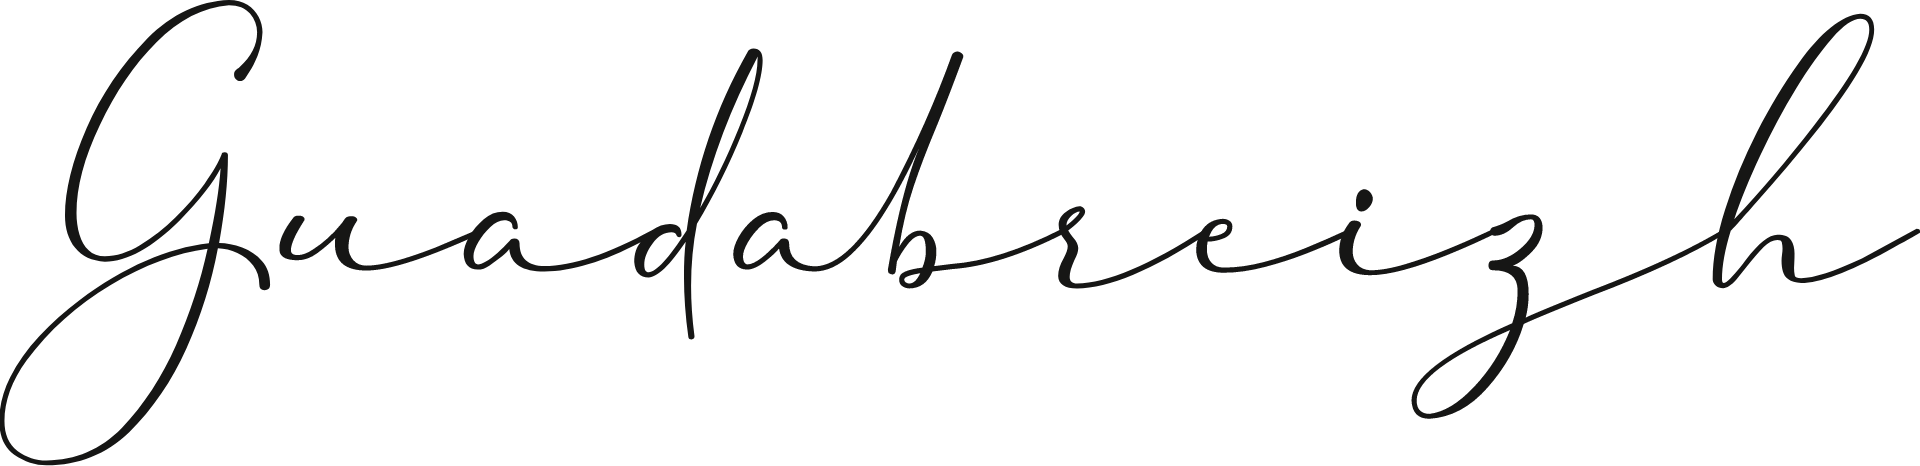 Logo Guadabreizh